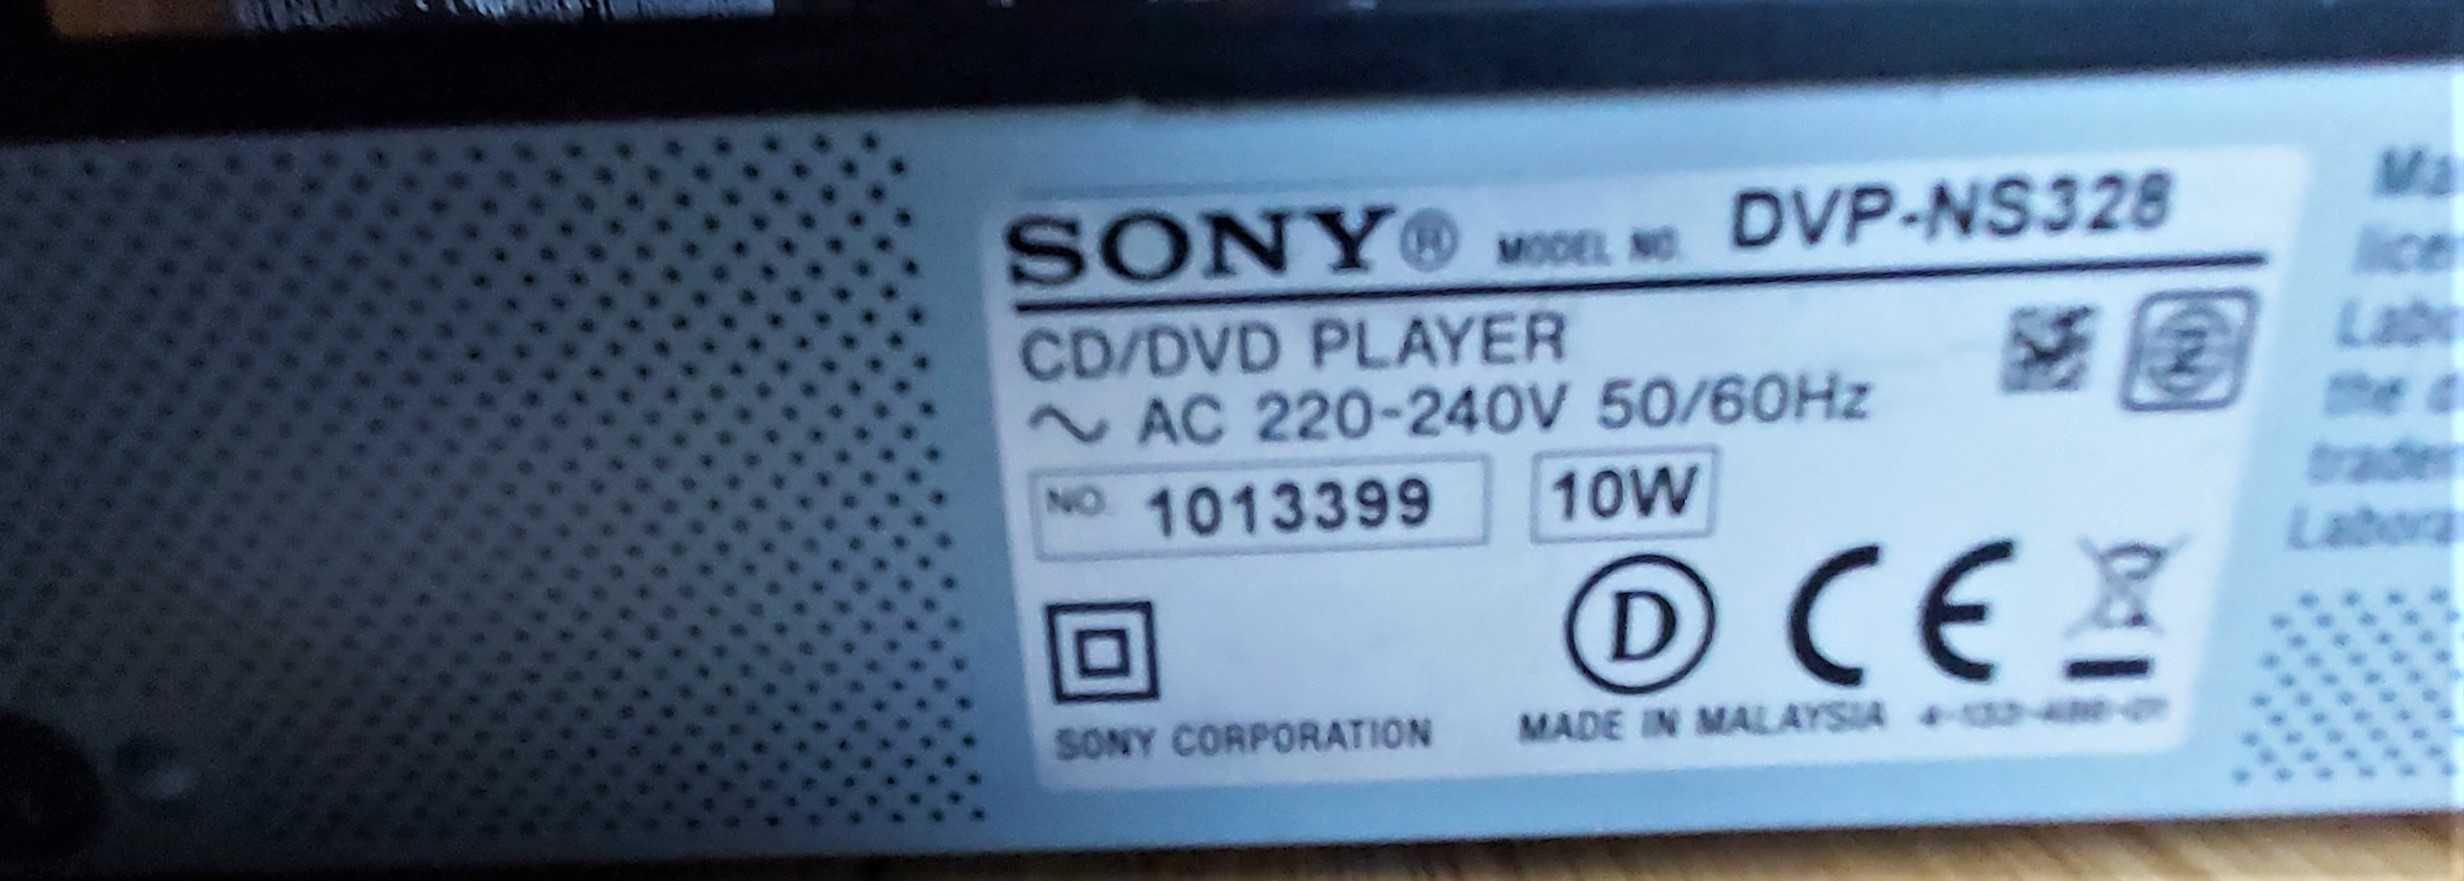 SONY CD/DVD player DVP-NS328 odtwarzacz sprawny używany